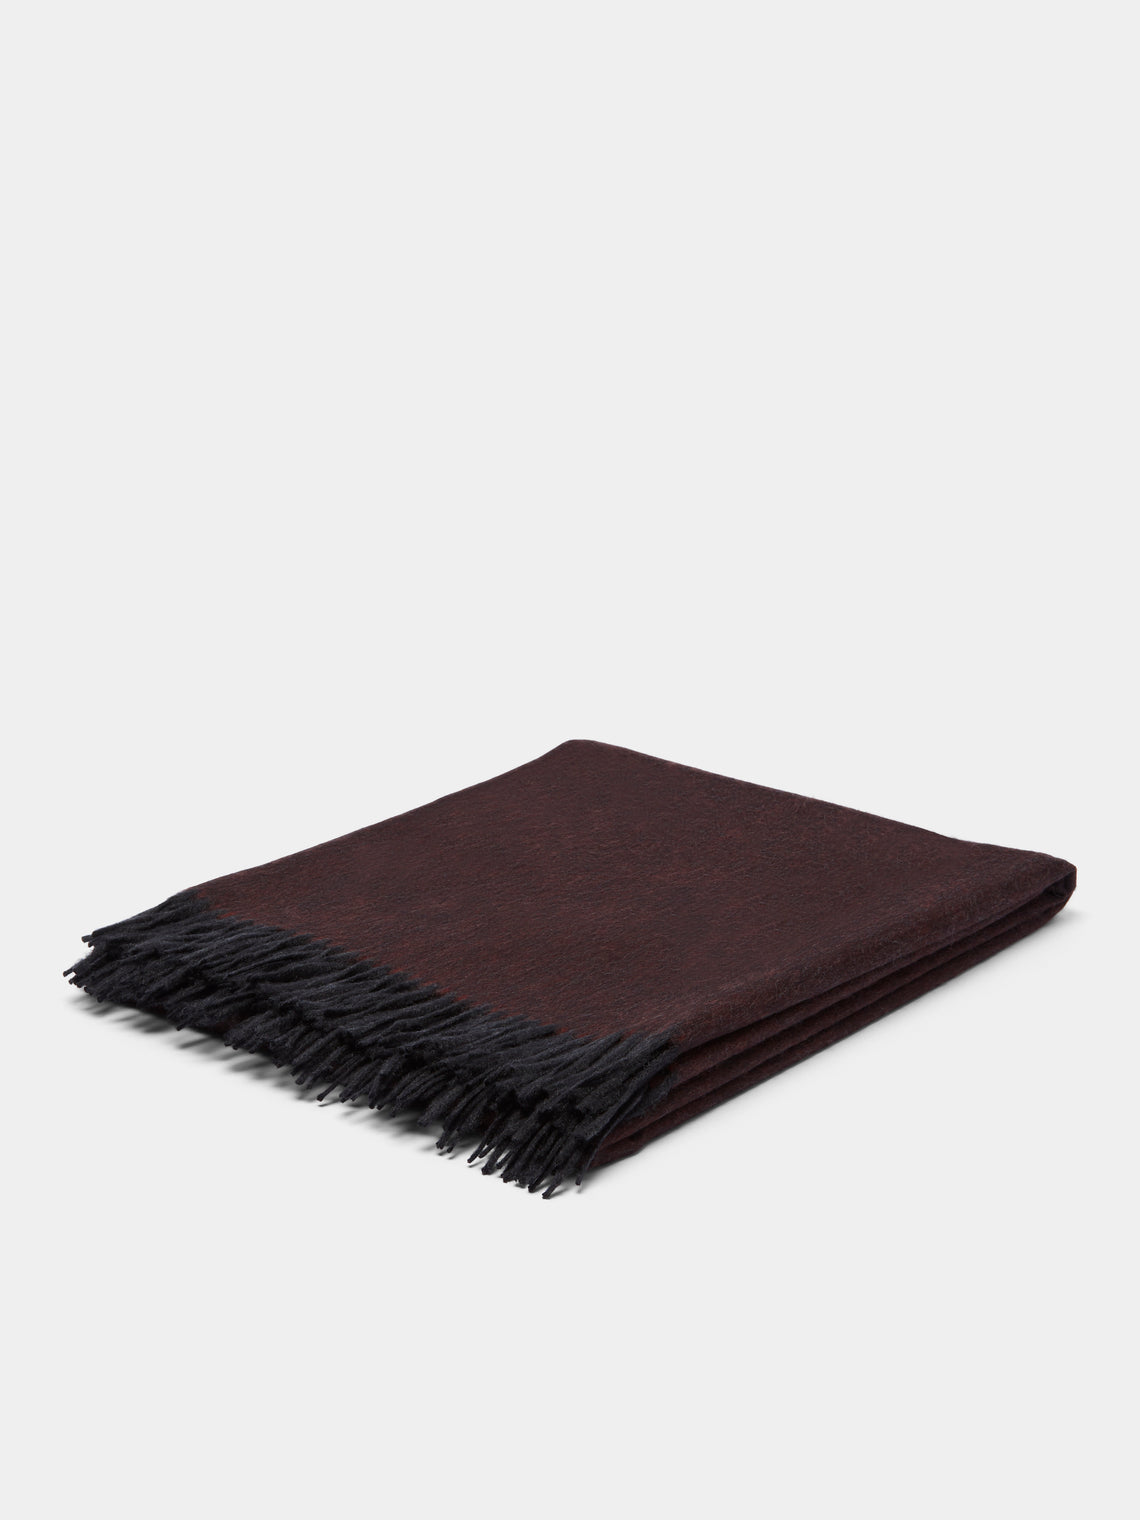 Begg x Co - Arran Cashmere Reversible Blanket - Burgundy - ABASK